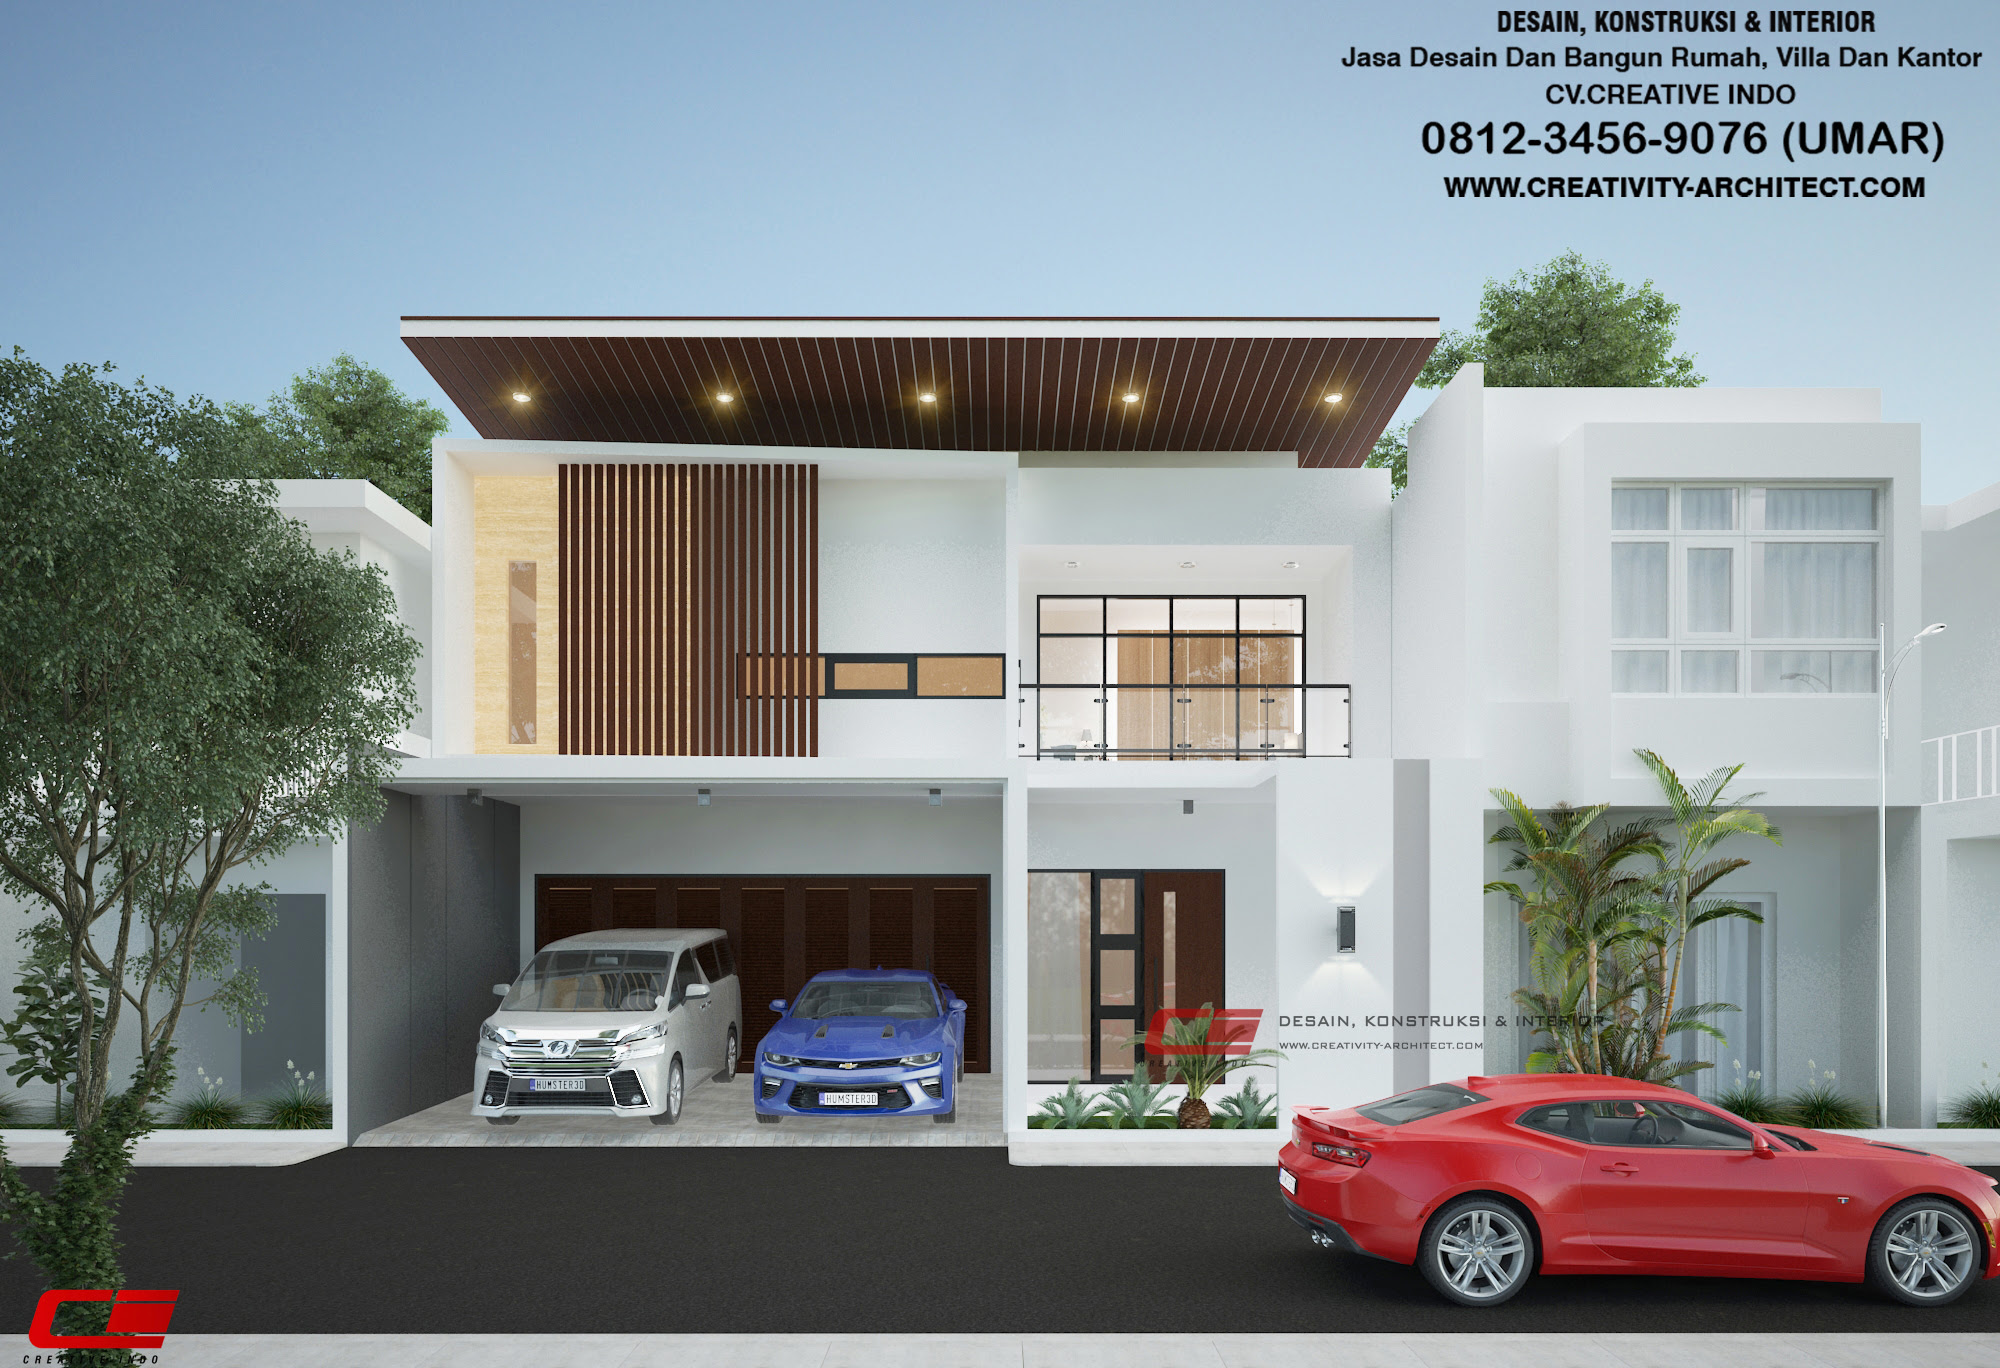 Desain Rumah Modern Minimalis Bali Desain Rumah Minimalis Terbaru